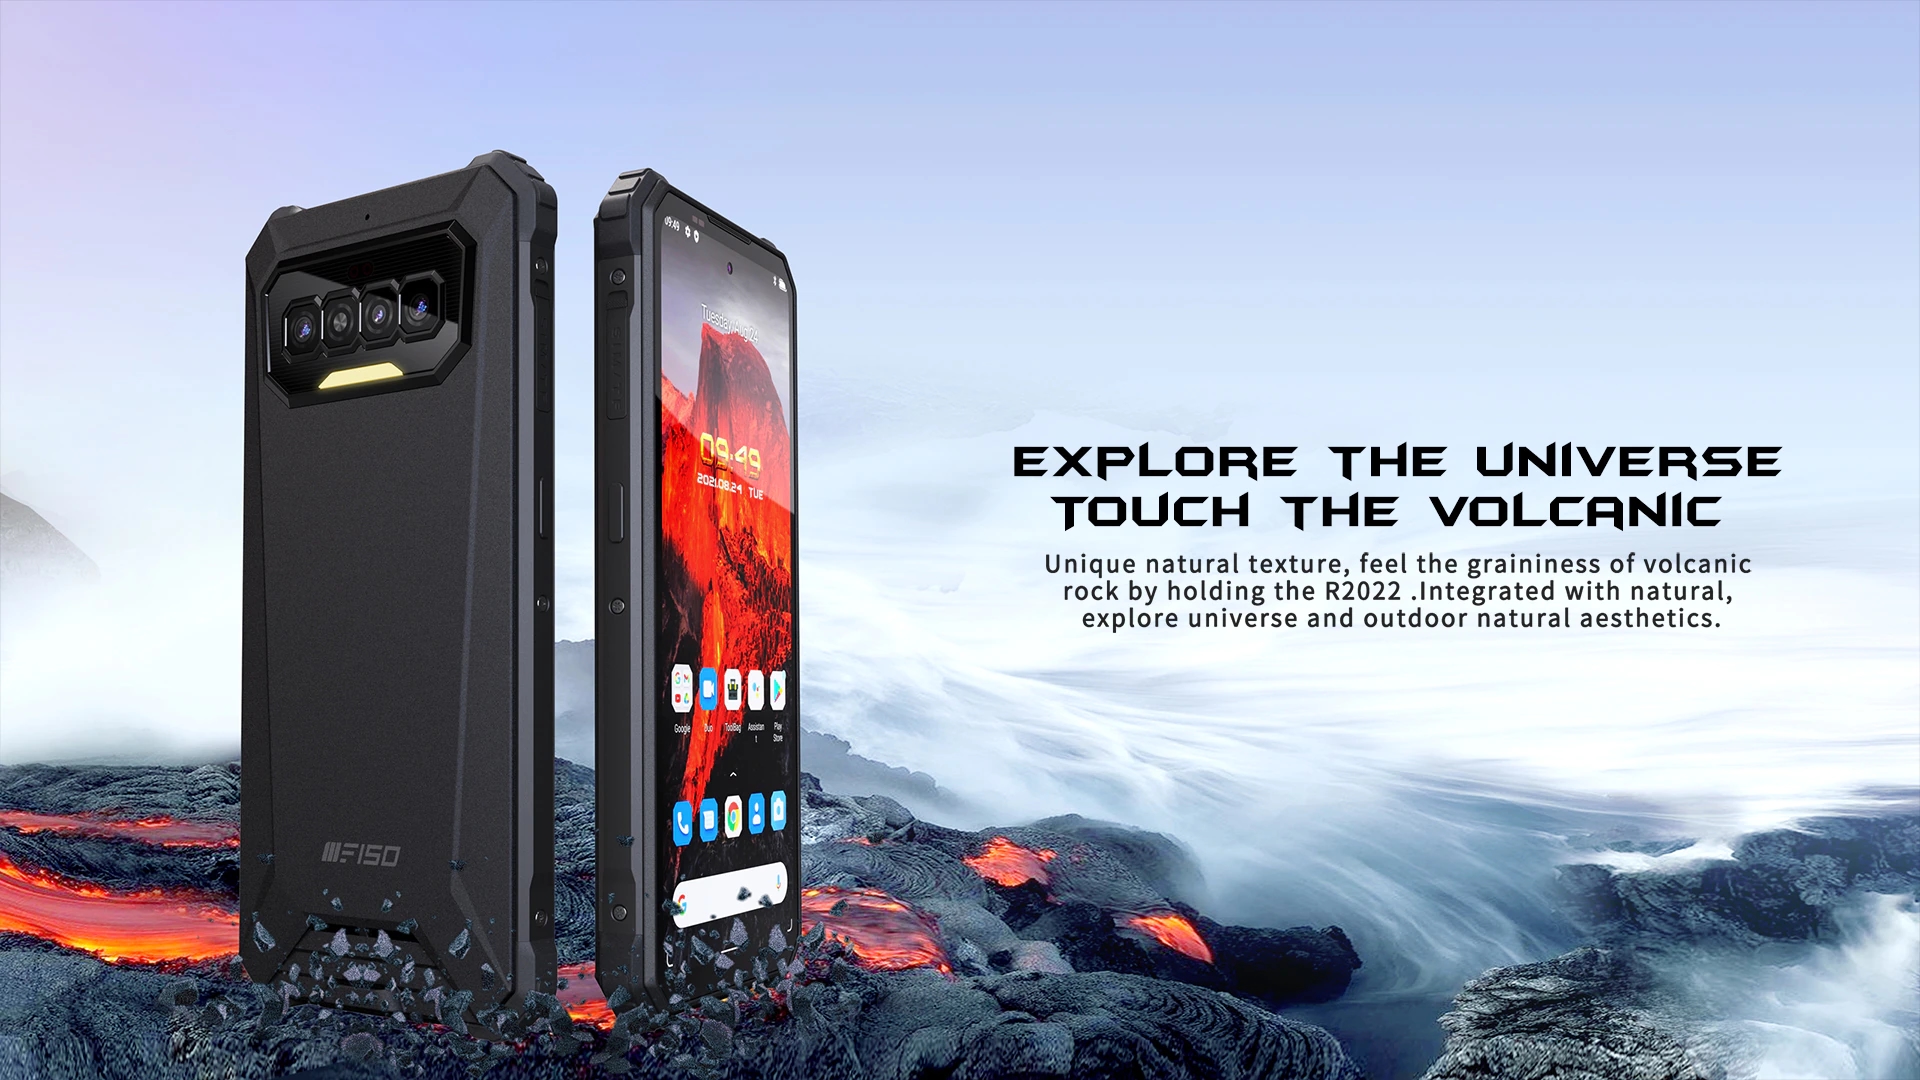 iiiF150 R2022 startet auf AliExpress: ein robustes Smartphone mit einem 90Hz-Bildschirm, NFC und 8300mAh-Akku für $200